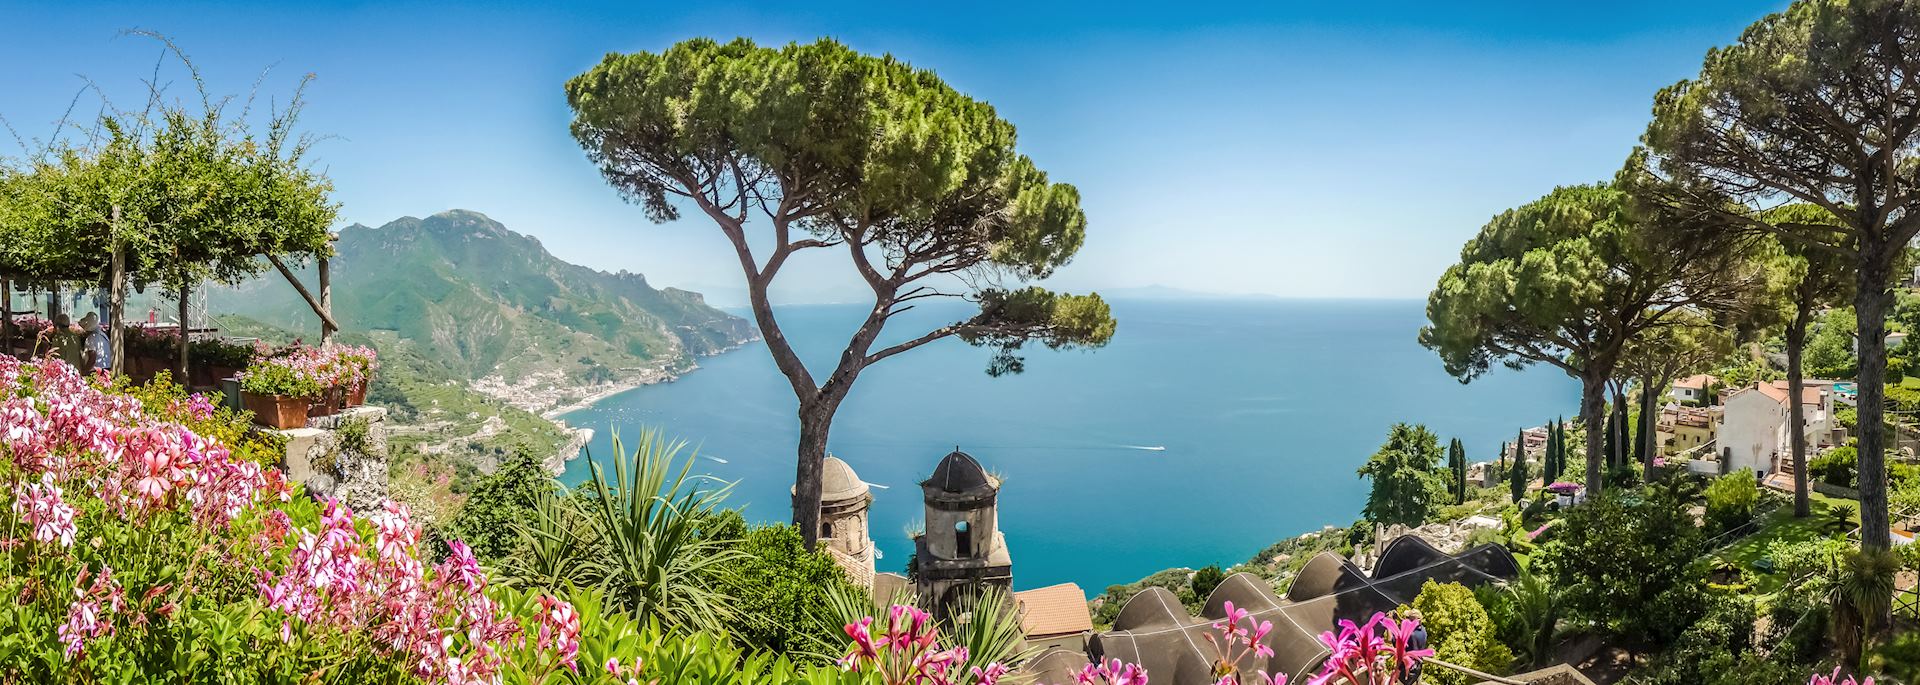 Amalfi Coast from Villa Rufolo gardens, Ravello